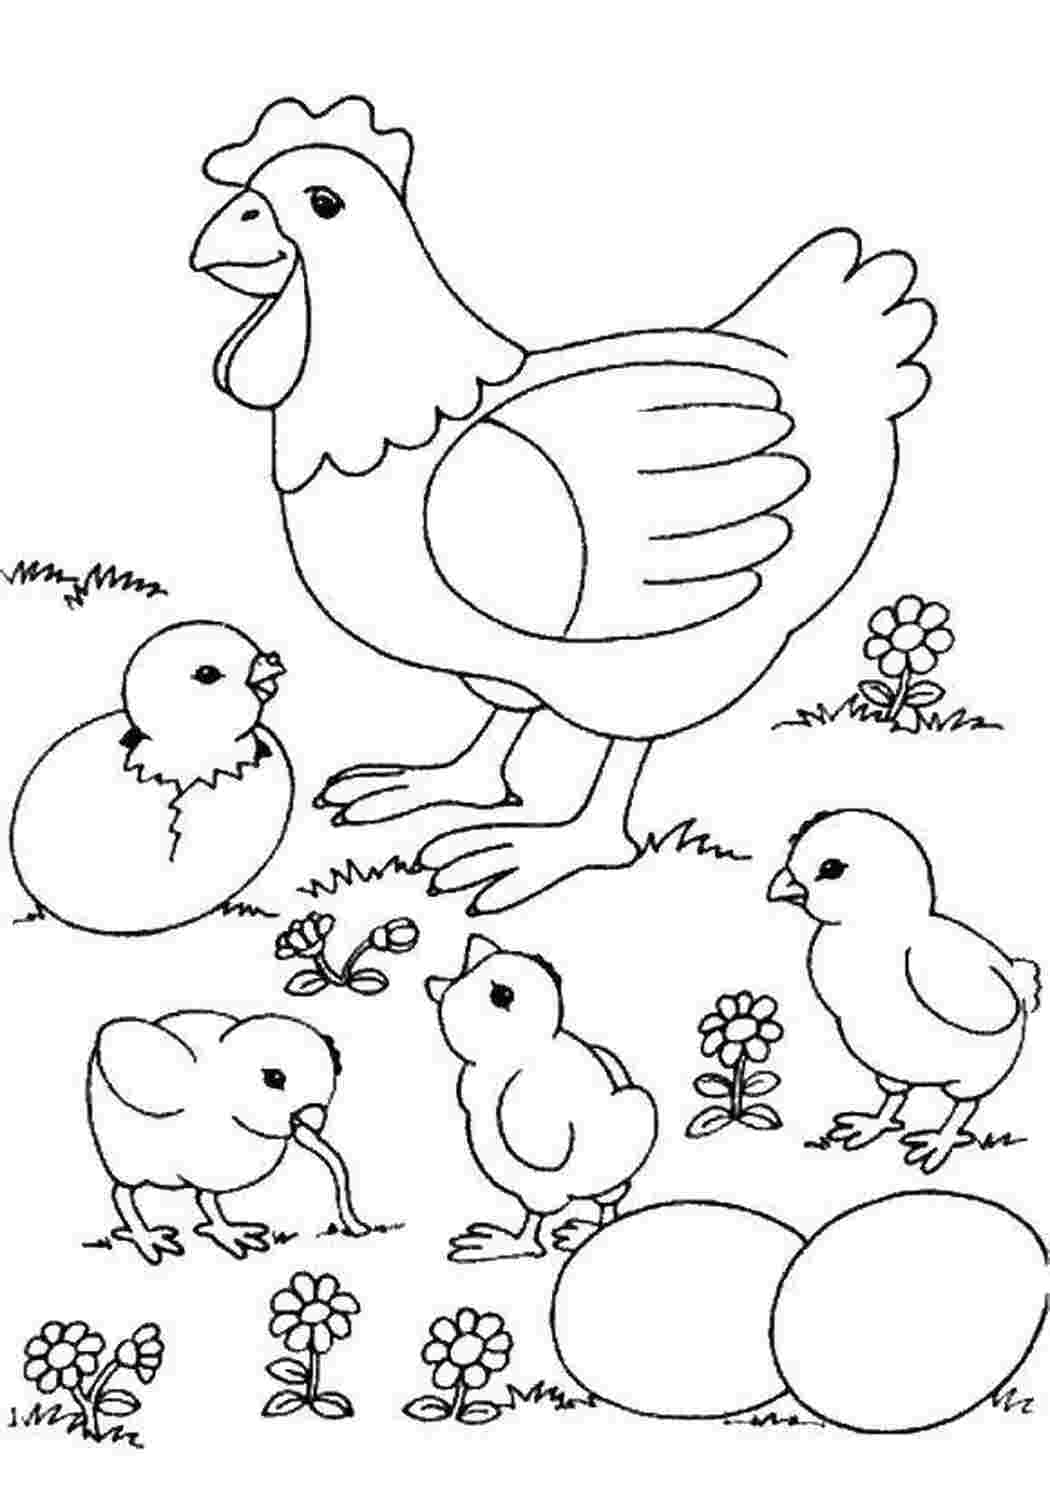 Раскраски, Курочка и цыплята, птицы курочка, цыплята, яйца, Контур птицы,  Птичка с хохолком., Контур птицы на ветке, Птица и цветы, Милашка петушок.